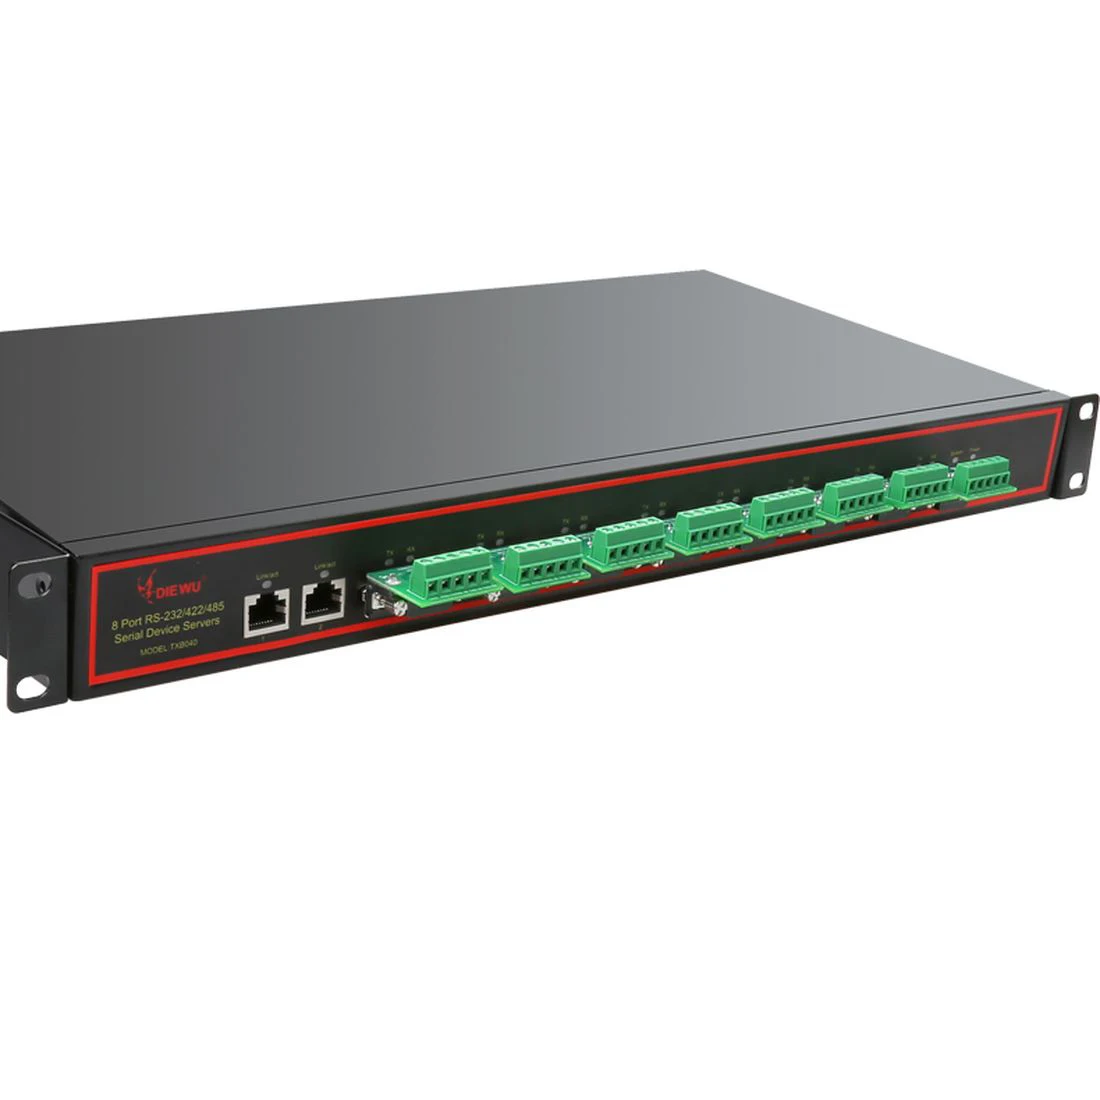 

Diewu 1Ux19inch 8-портовый промышленный сервер последовательных устройств с двумя портами 10/100Mbps RJ45 к RS232/RS485/RS422 порт поддержки Auto-MDI/MDIX